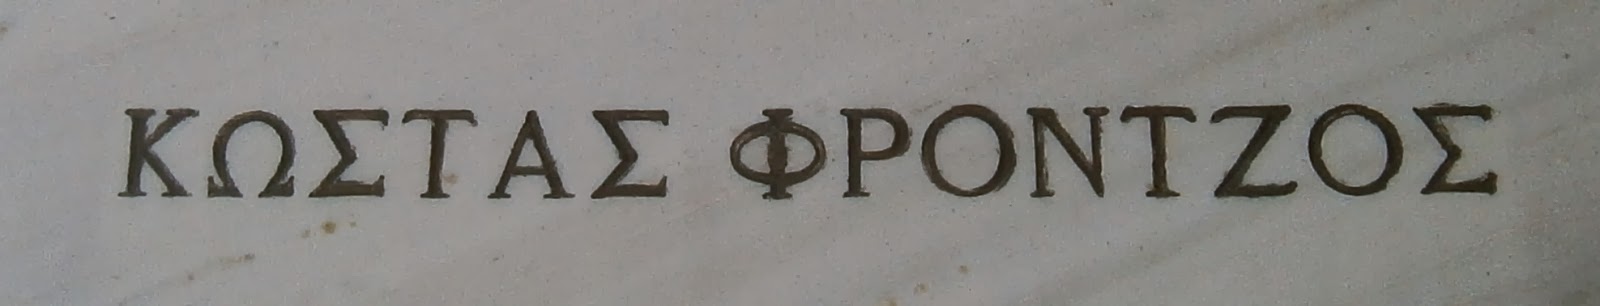 το μνημείο του Κώστα Φρόντζου στο Α΄ Δημοτικό Νεκροταφείο Ιωαννίνων